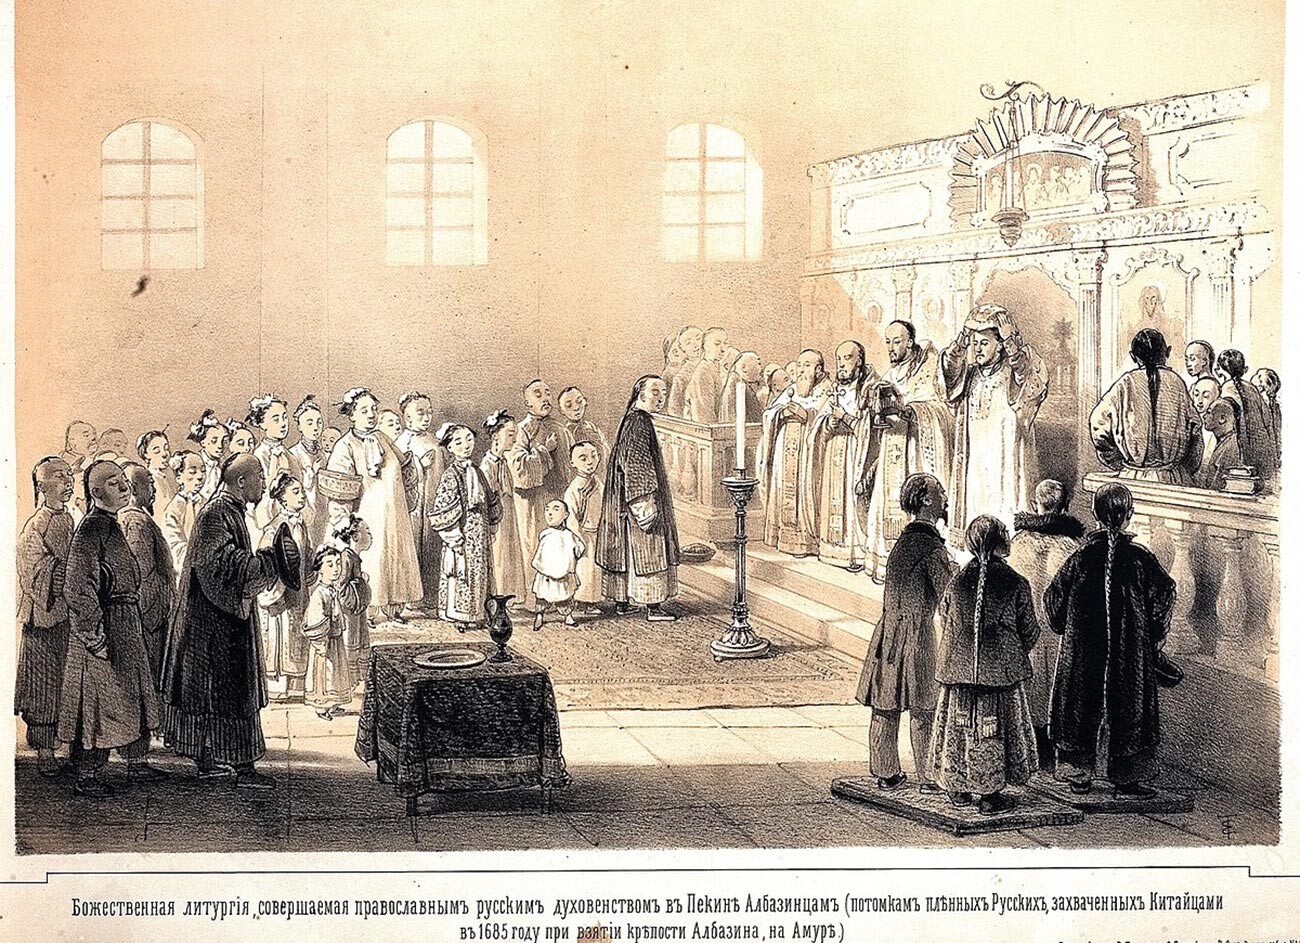 Una funzione per gli albazinesi nella Missione Ecclesiastica Ortodossa Russa a Pechino